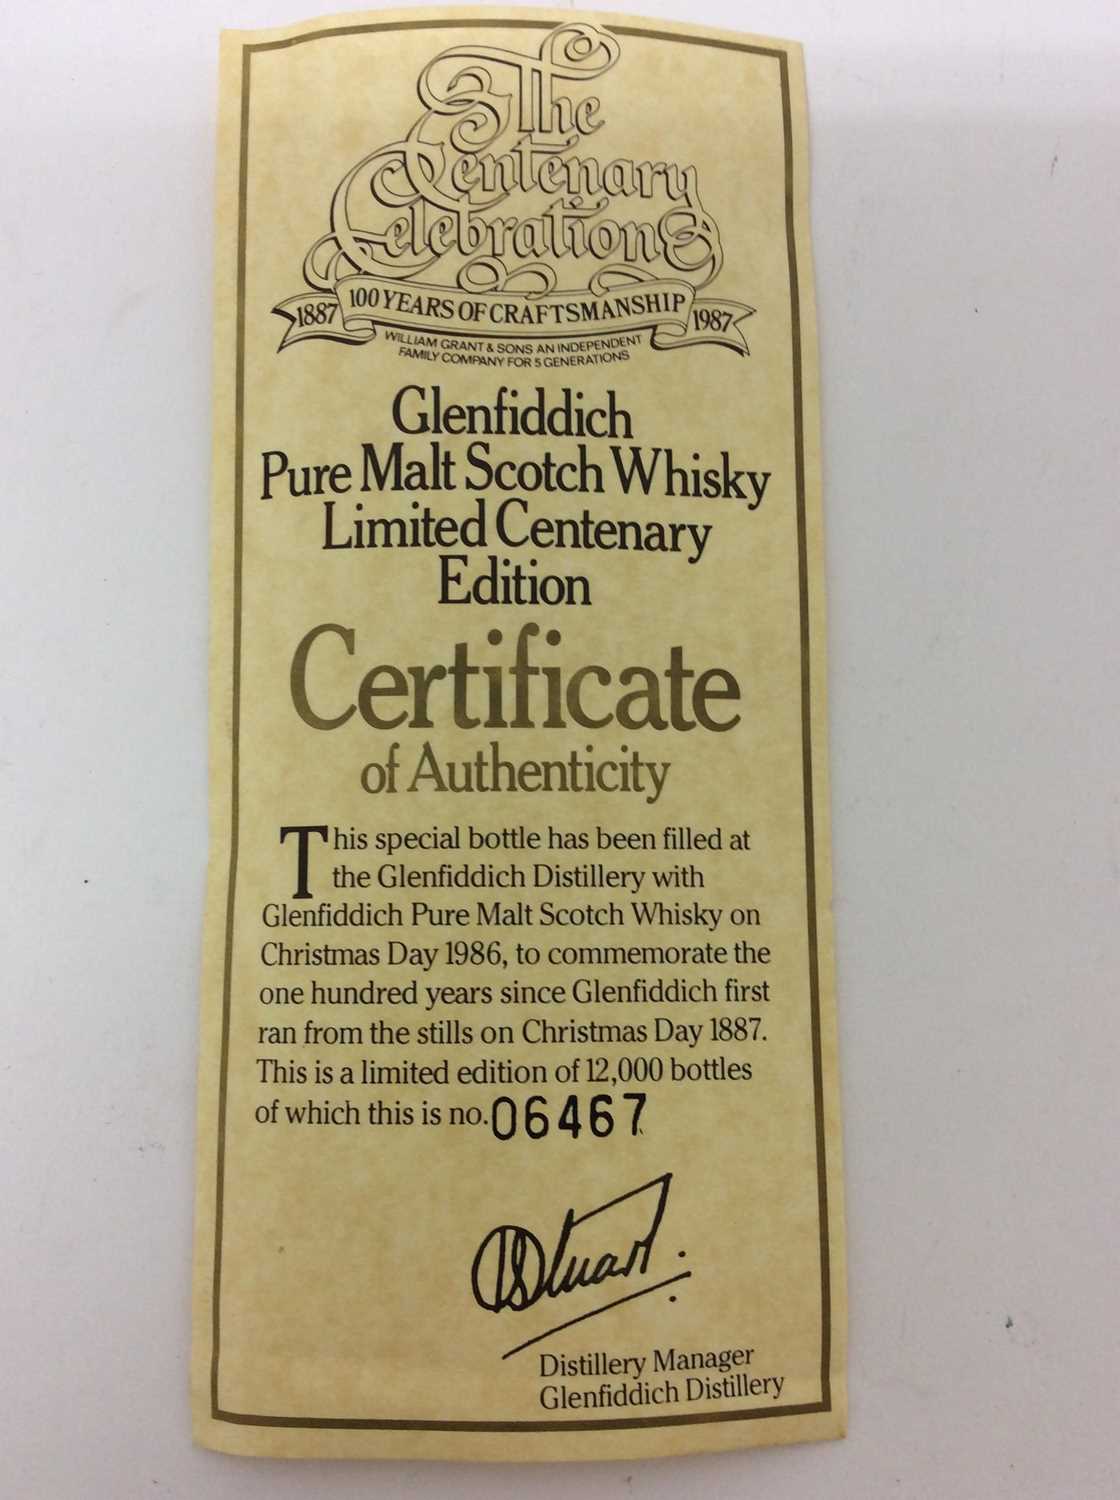 Glenfiddich 100 year celebration whisky - Image 4 of 5